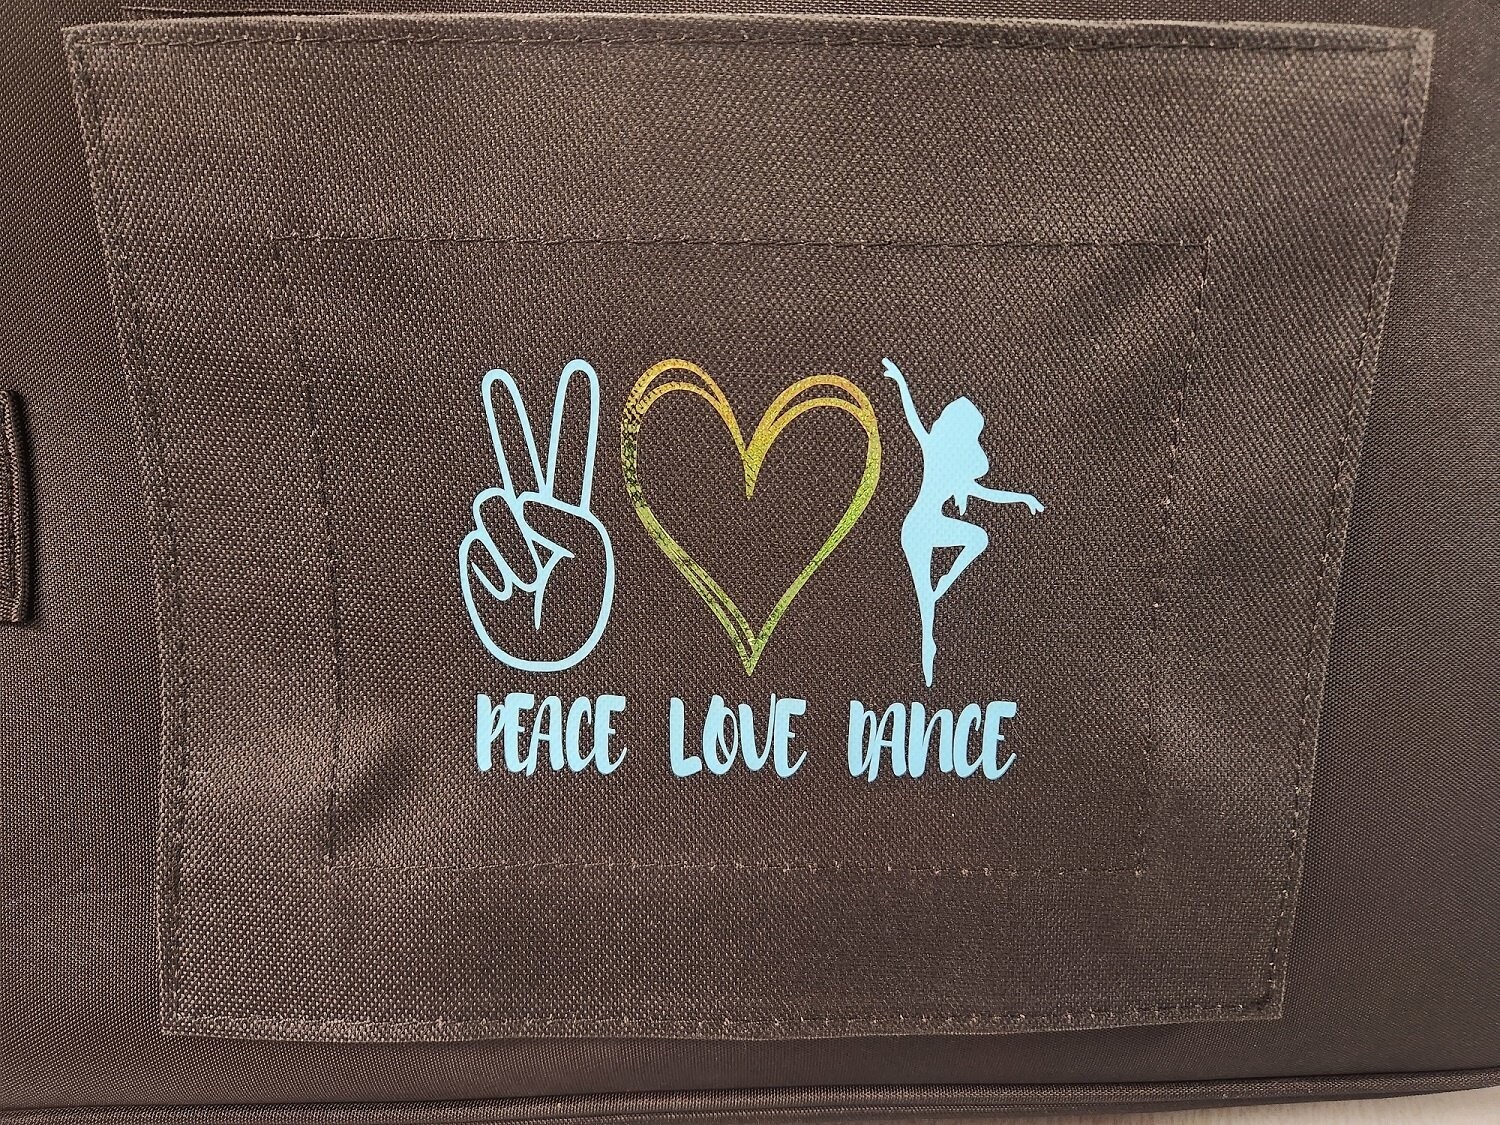 PEACE LOVE DANCE - PATCH